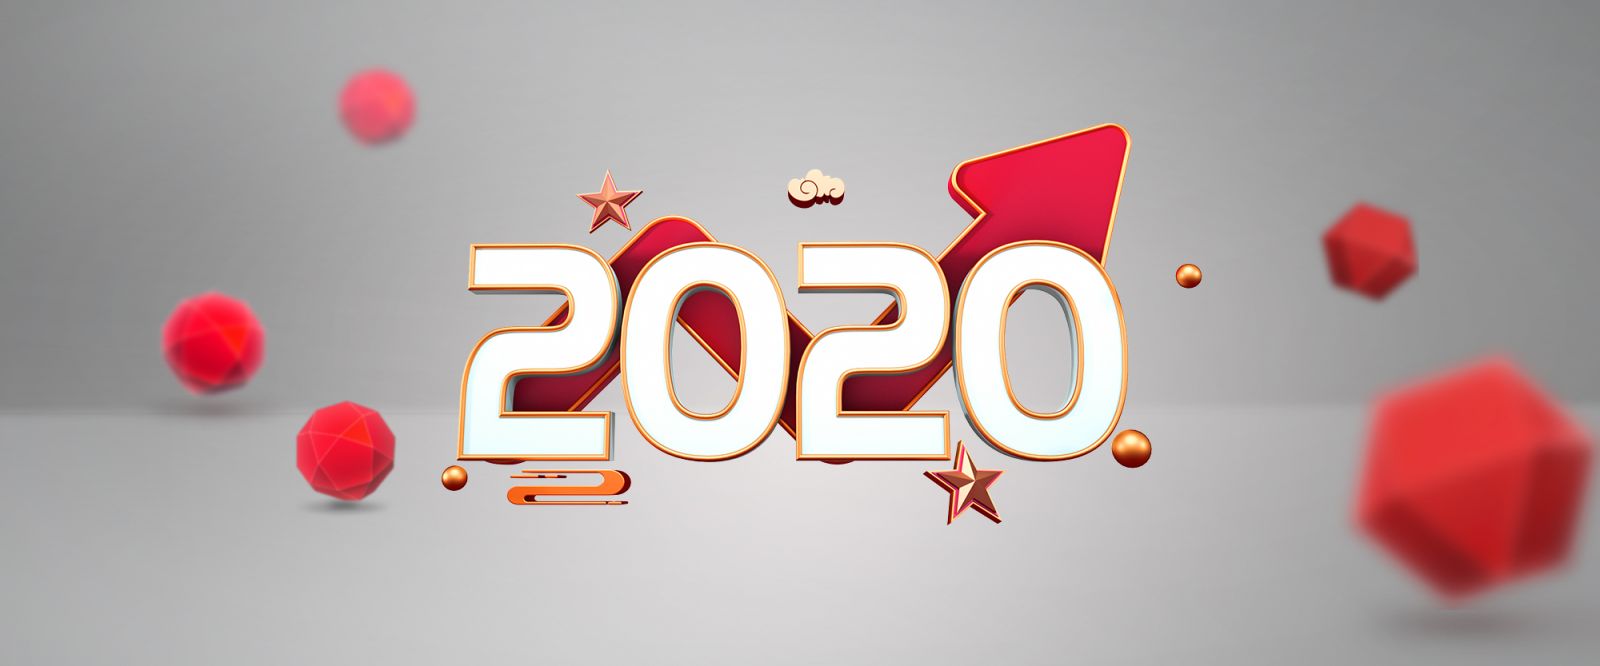 Top 10 Key Trends in Food 2020